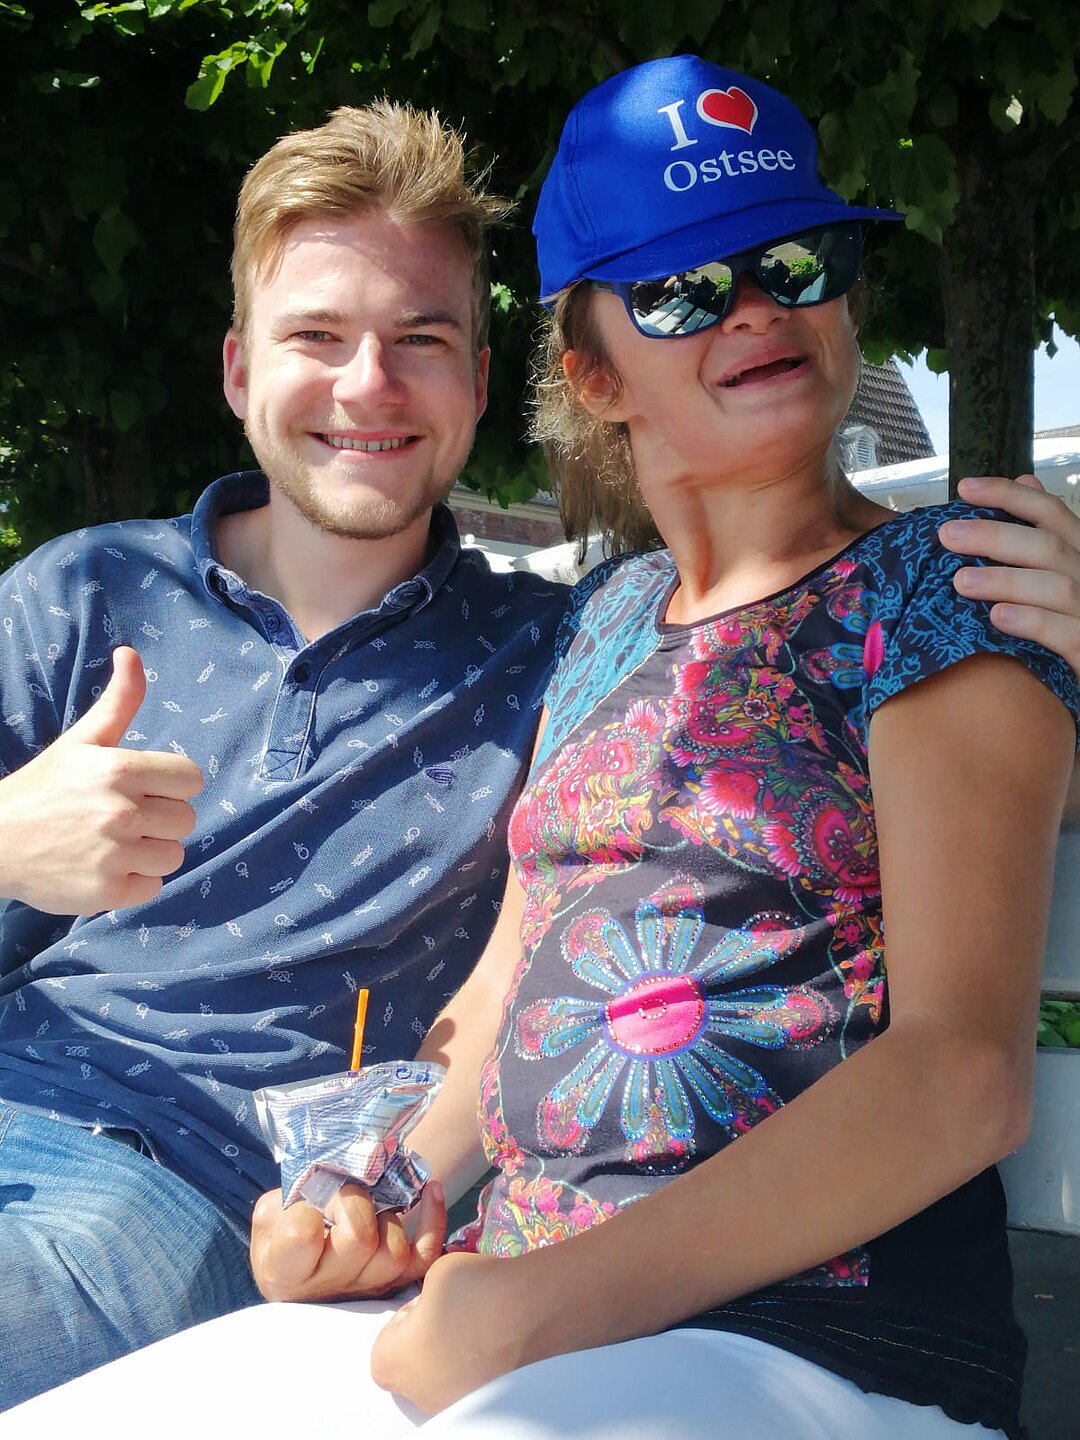 Foto von Jakob Ruch und einer Person mit blauer Kappe und Sonnenbrille.